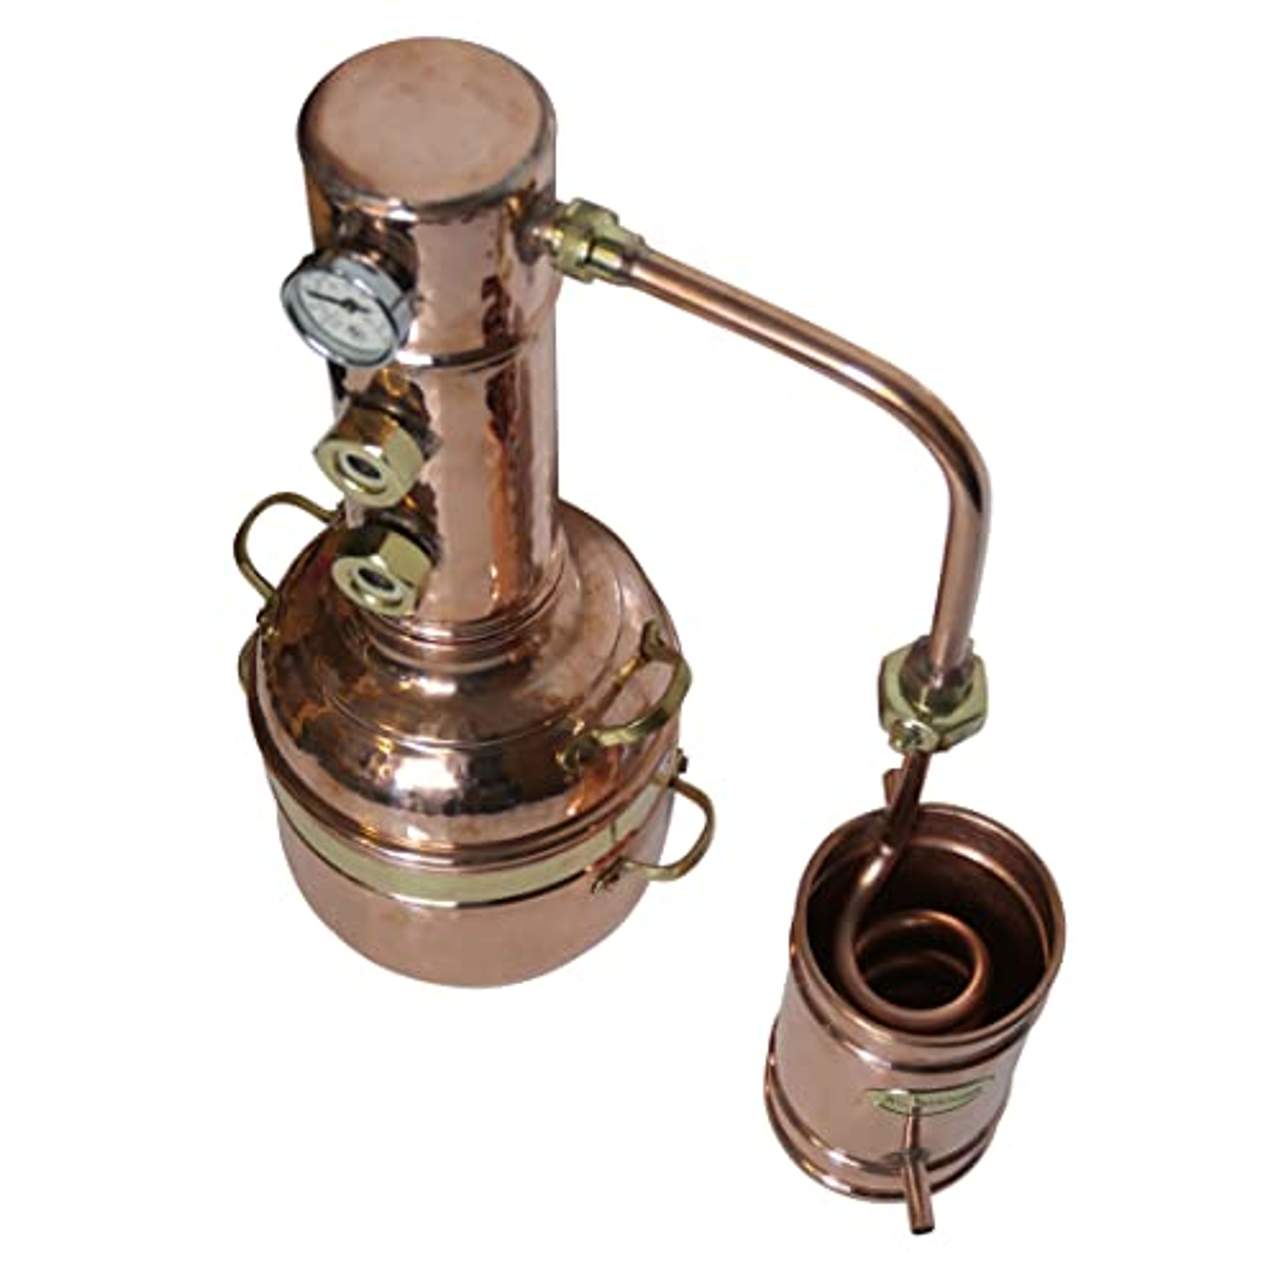 Dr Richter 2L Destille Modell Aroma II aus Kupfer produziert